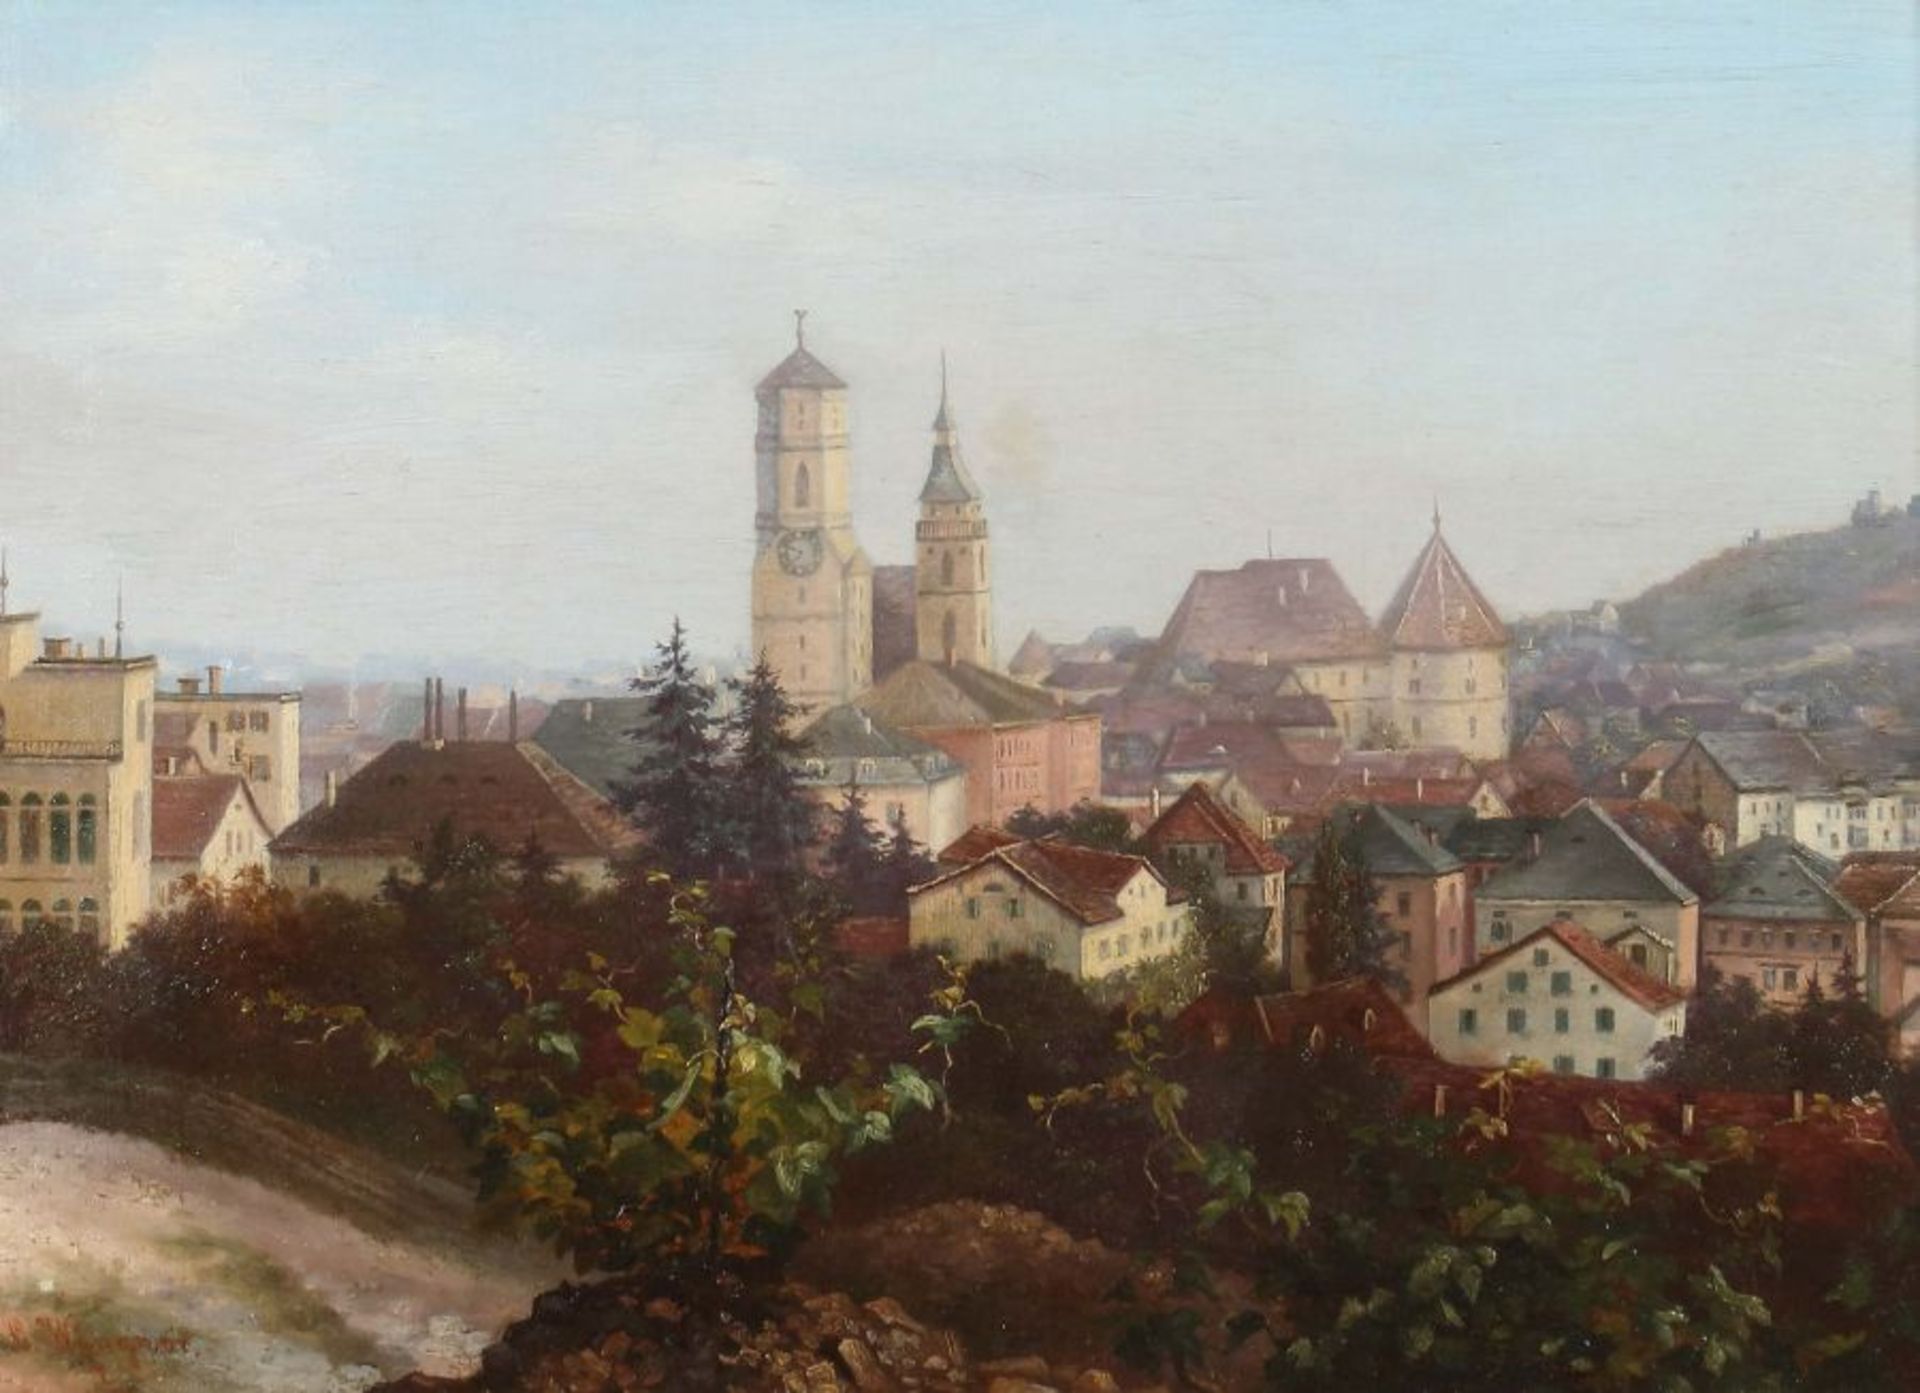 Wangner, C. Maler des 19./20. Jh.. "Blick auf Stuttgart", Anfang 20. Jh., mit dem Alten Schloss